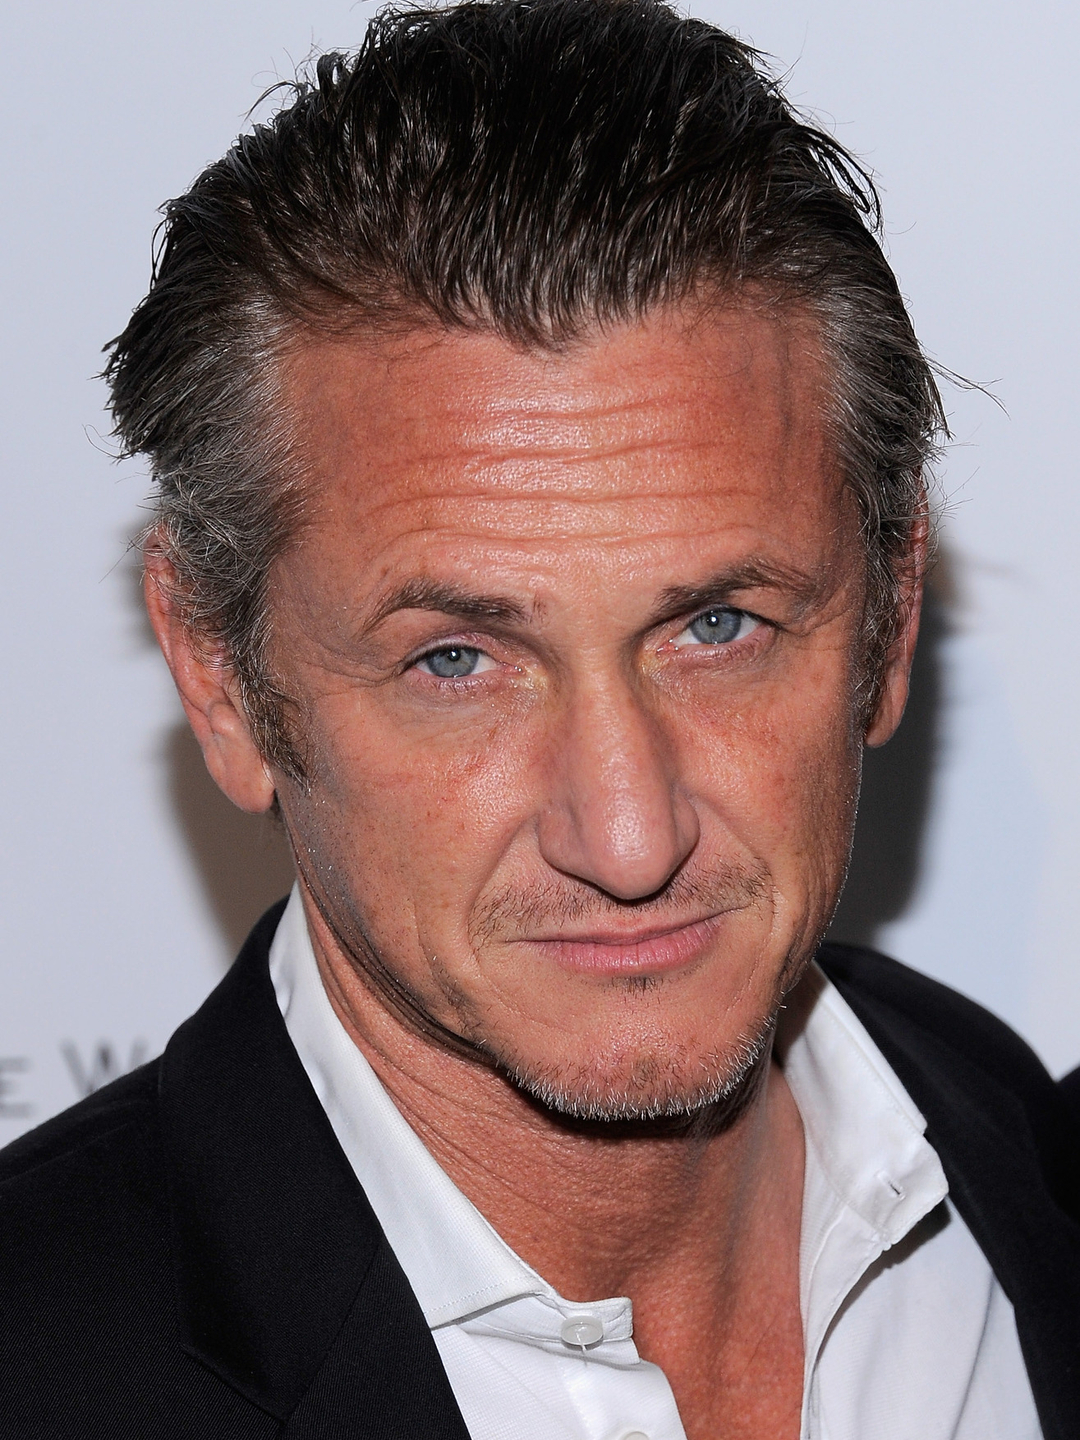 Sean Penn early career